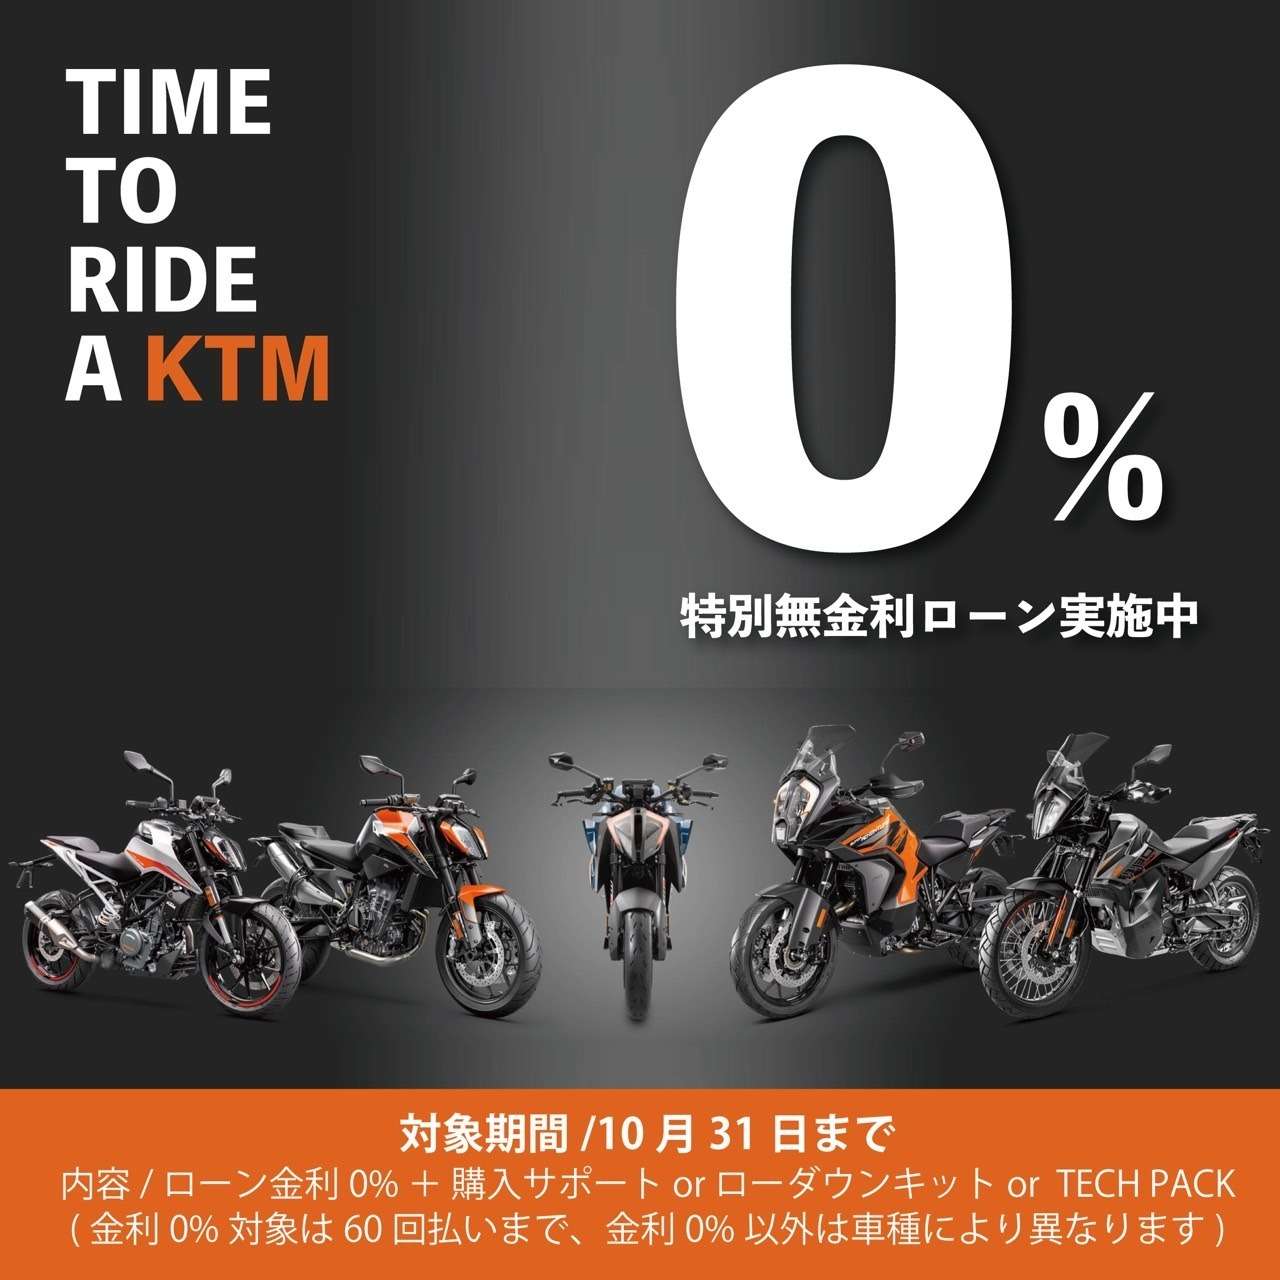 ローン金利0% KTM 250ADVENTURE